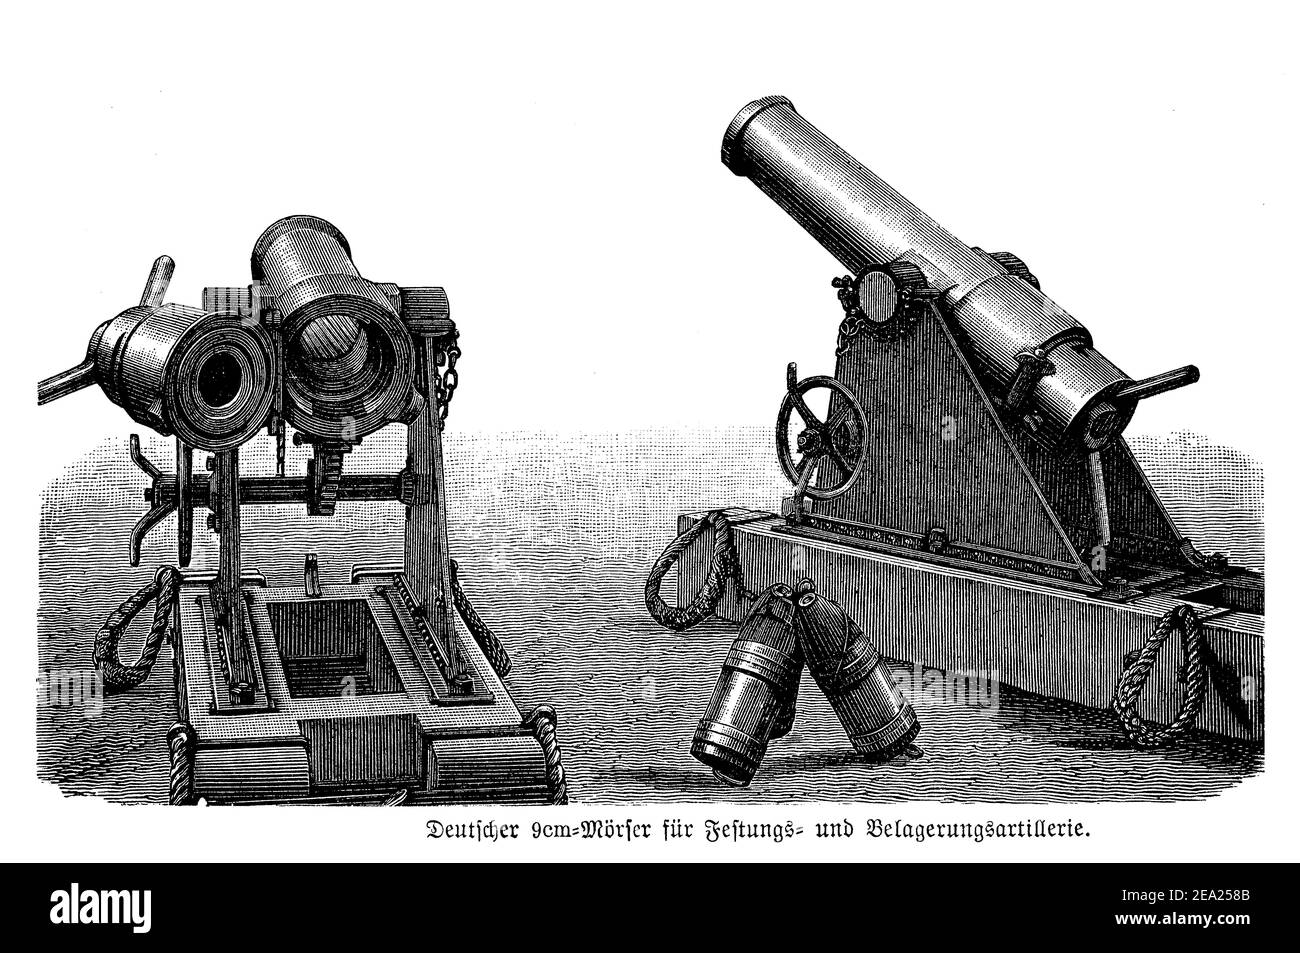 Mortero alemán, arma montada para la defensa militar de la fortificación, finales del siglo 19 Foto de stock